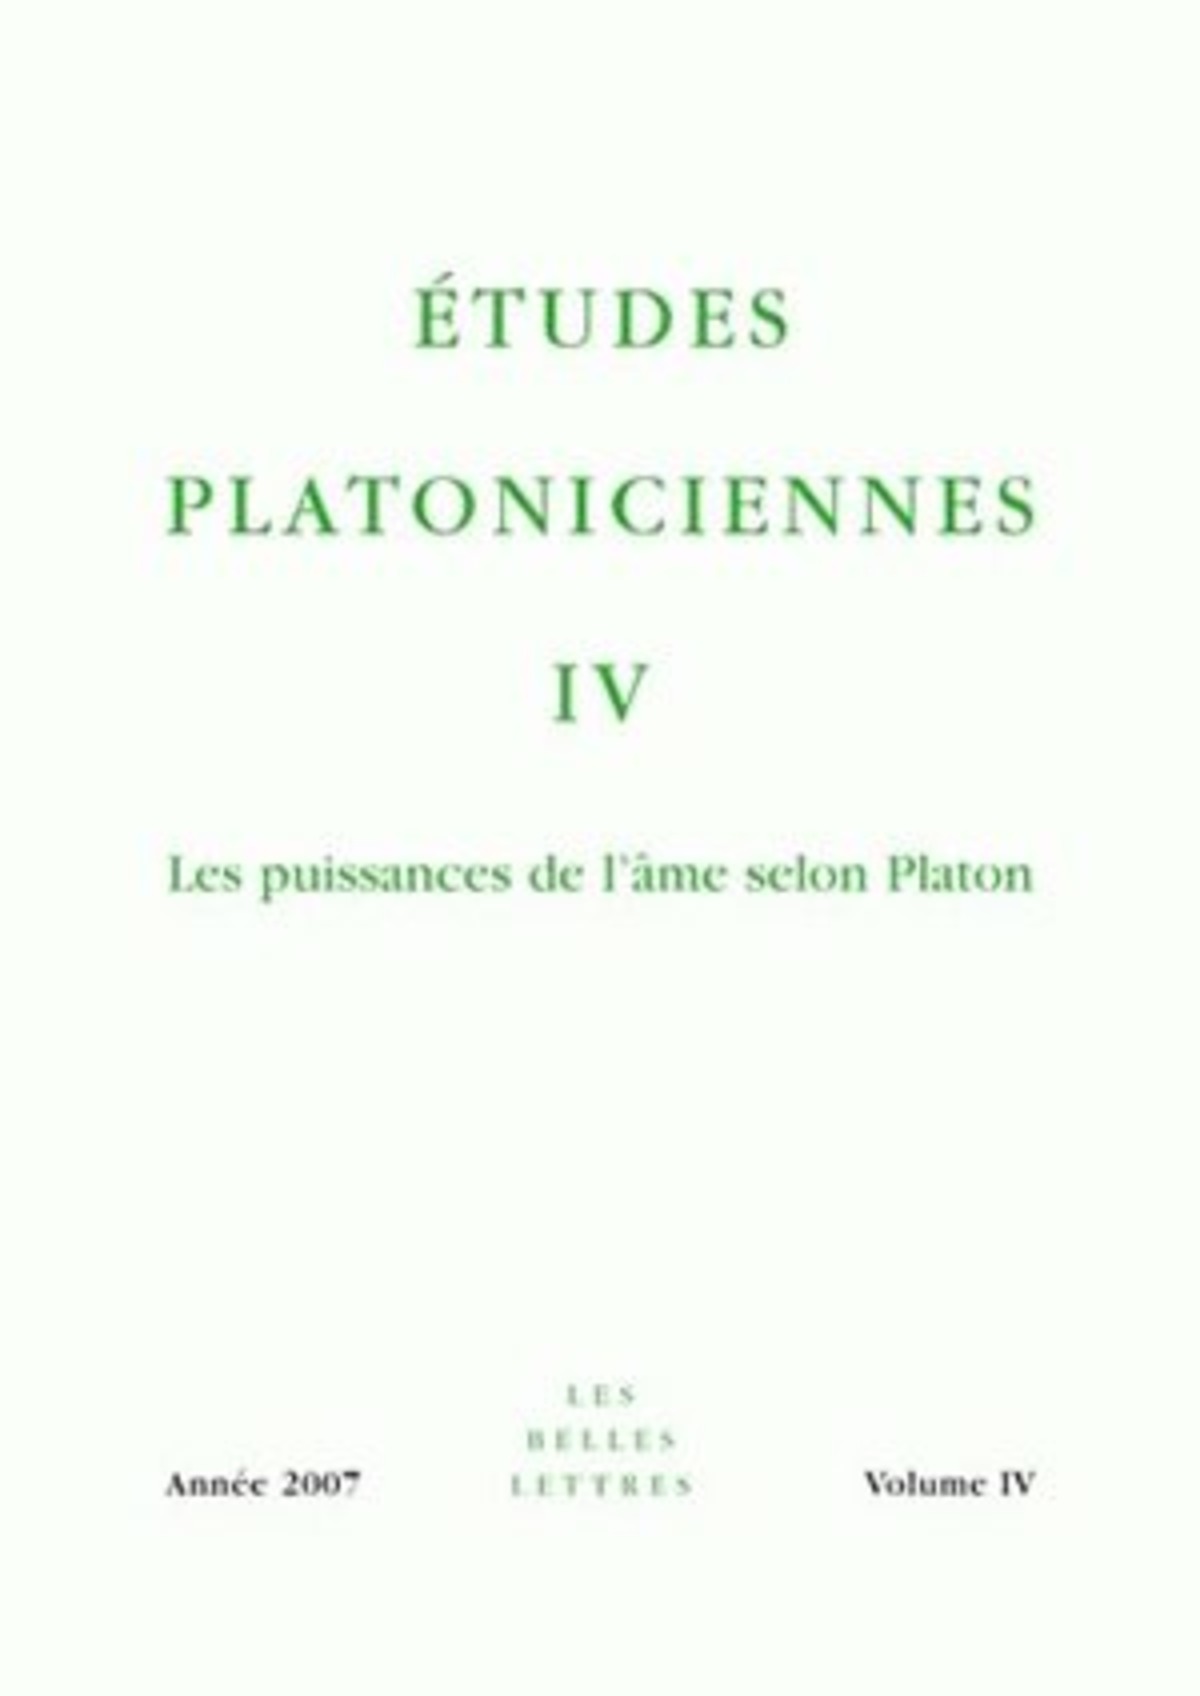 Études platoniciennes IV